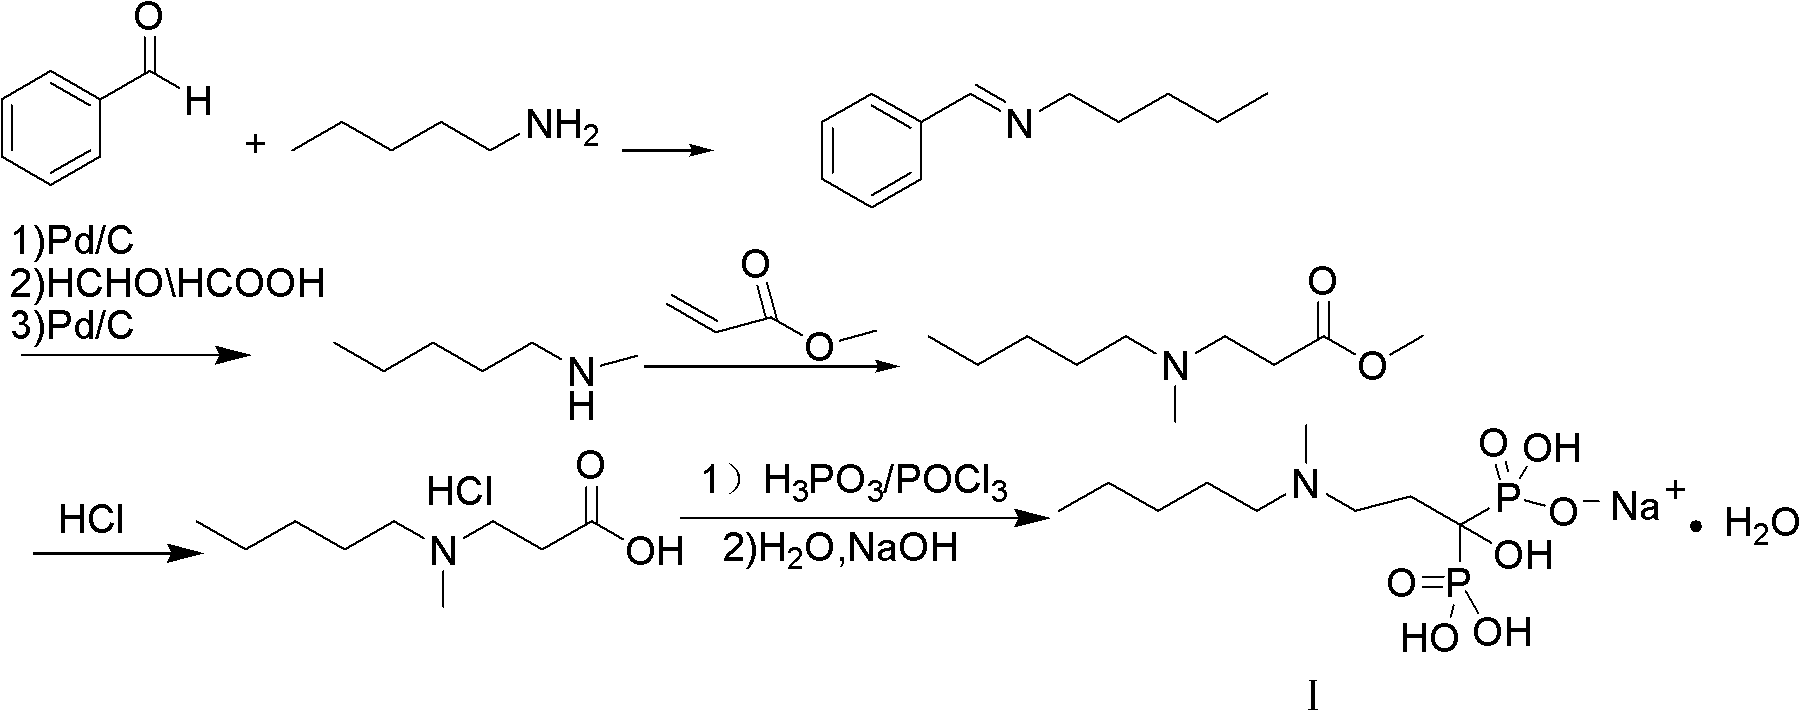 Method for synthesizing sodium ibandronate